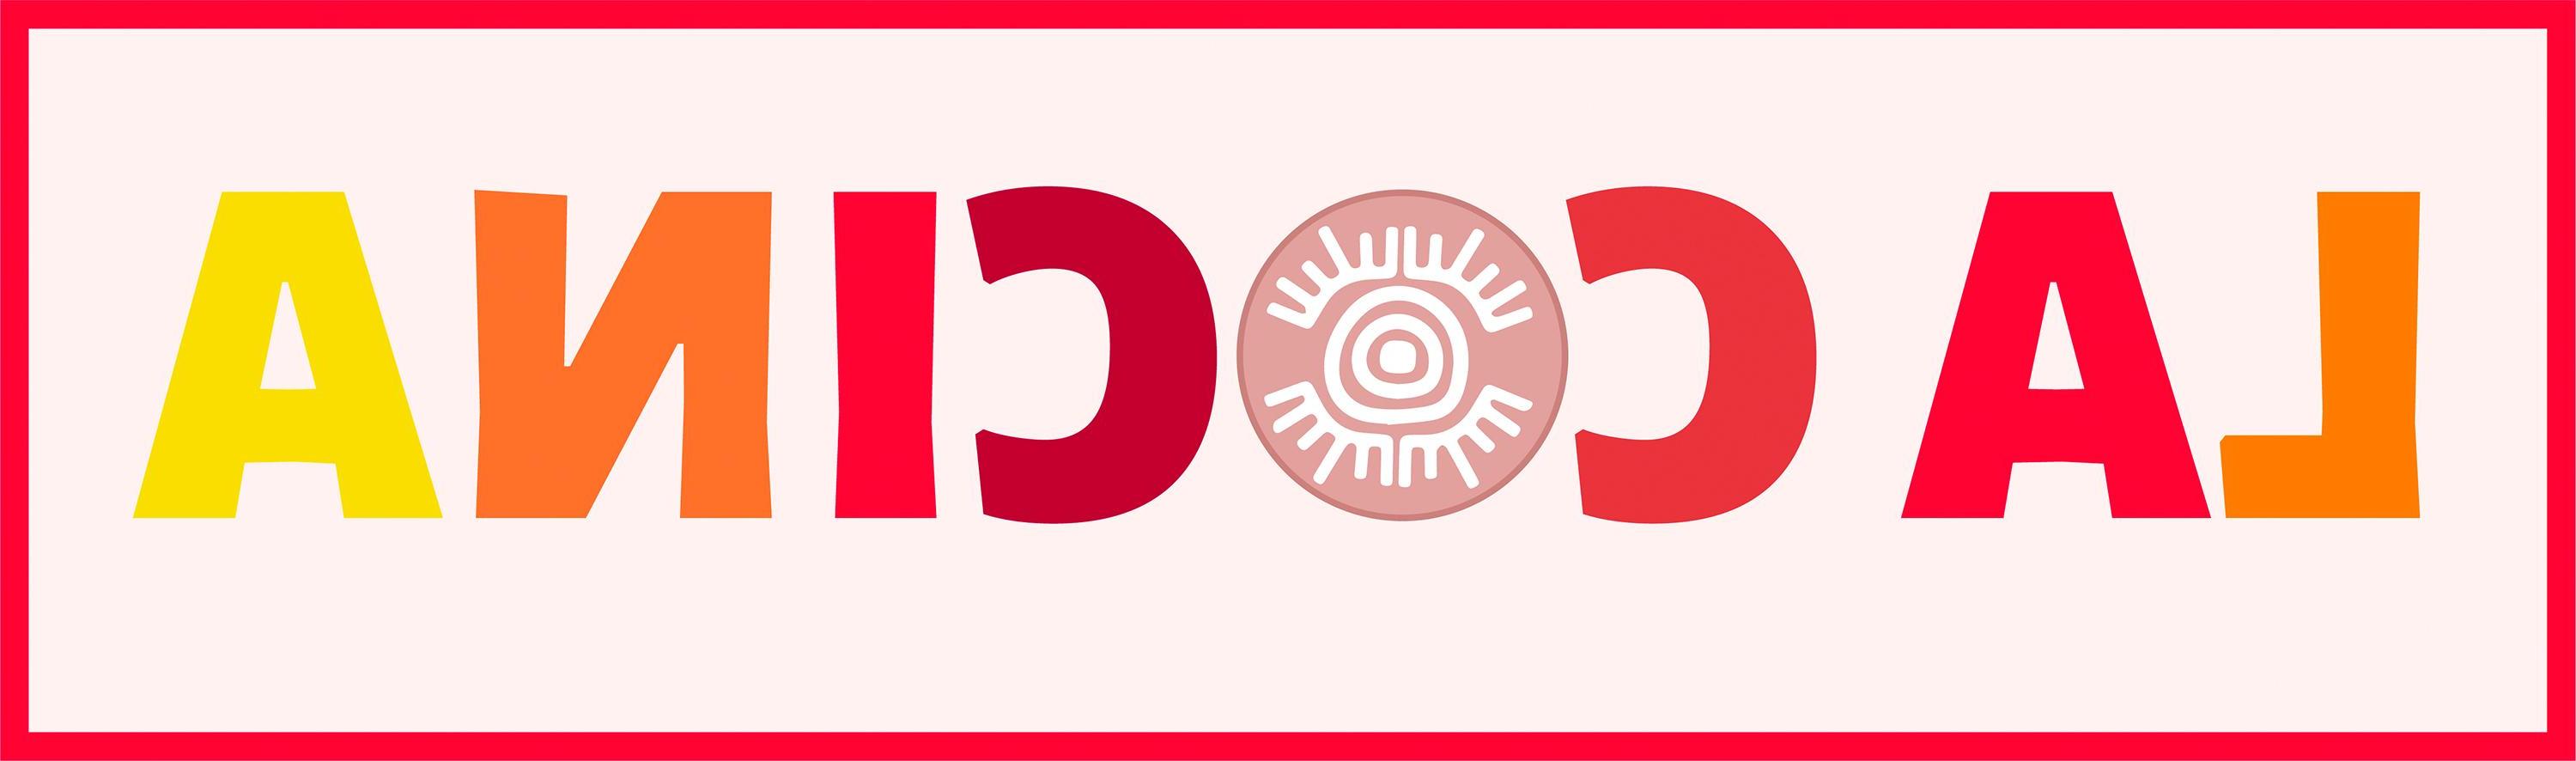 logotipo de la cocina